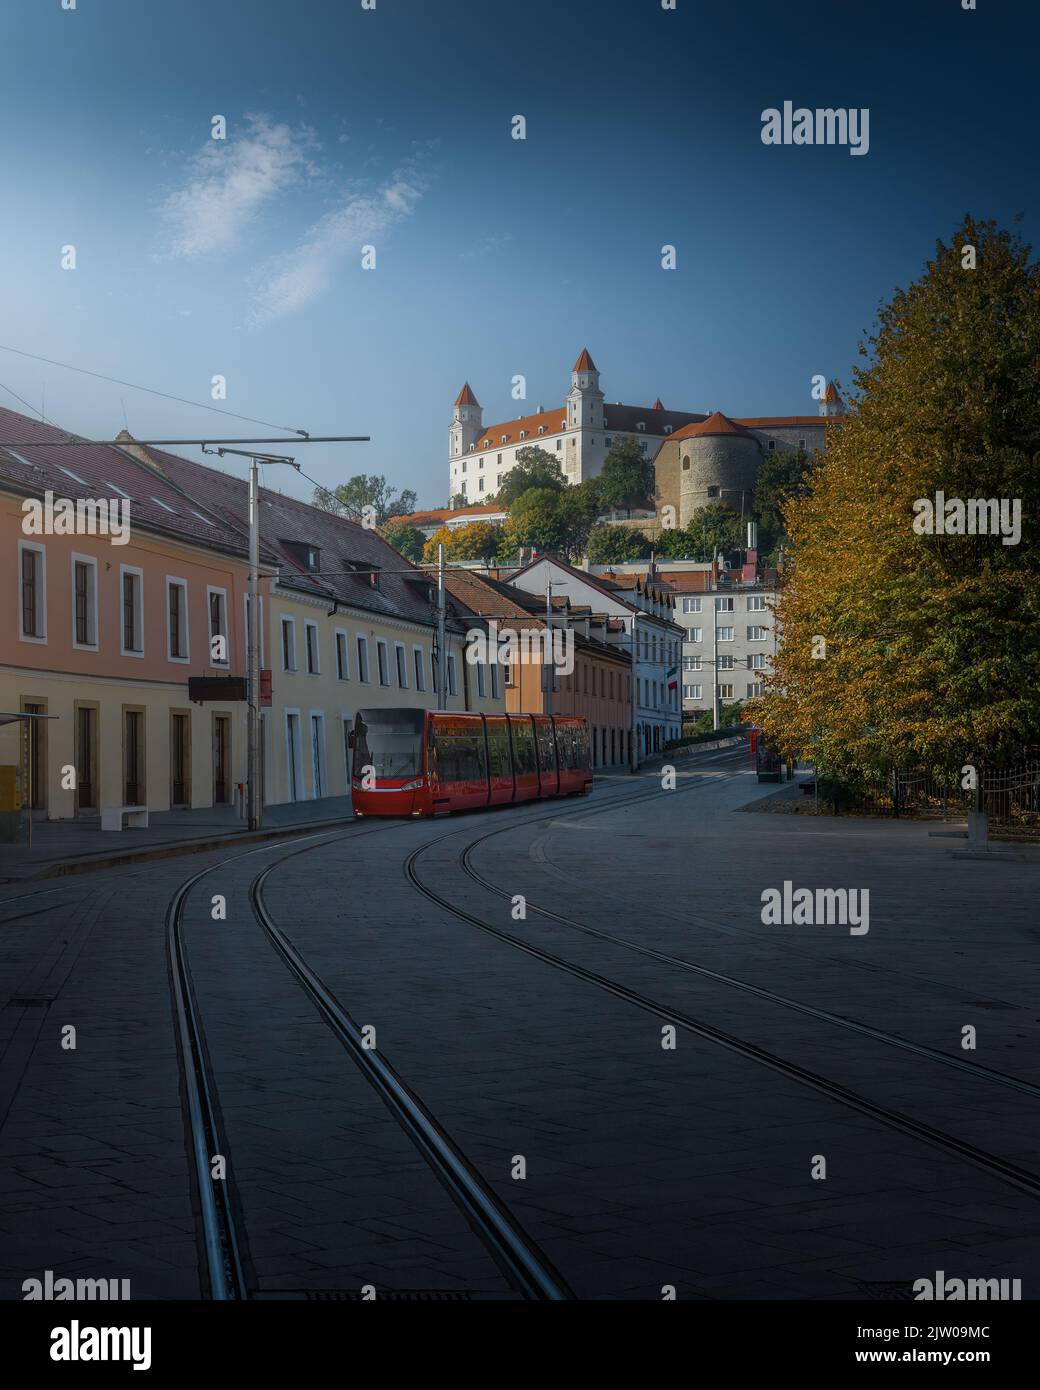 Calle con un tranvía rojo y el castillo de Bratislava al fondo - Bratislava, Eslovaquia Foto de stock